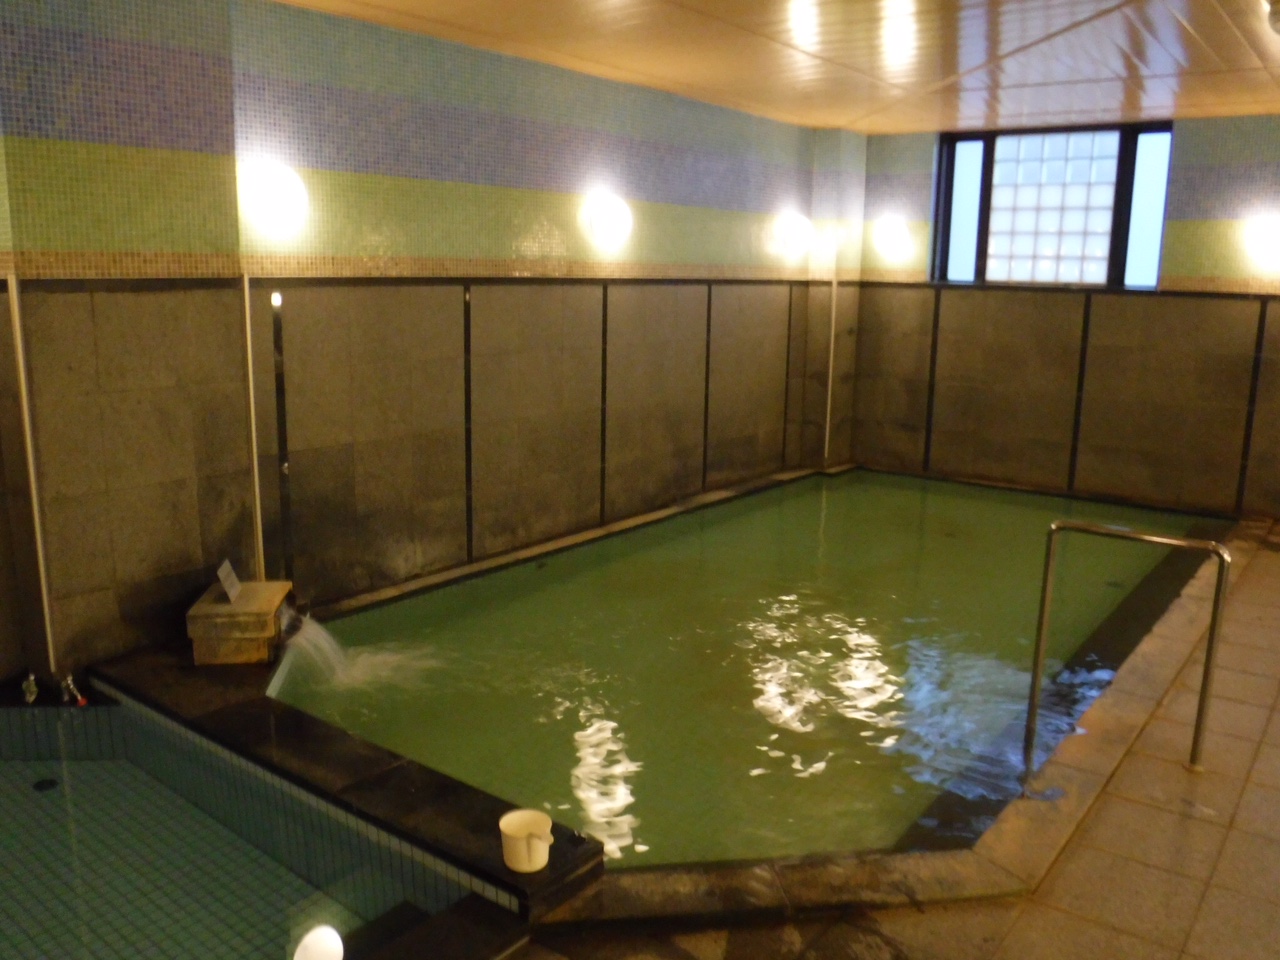 稚内グランドホテル 天然温泉 ふれあいの湯